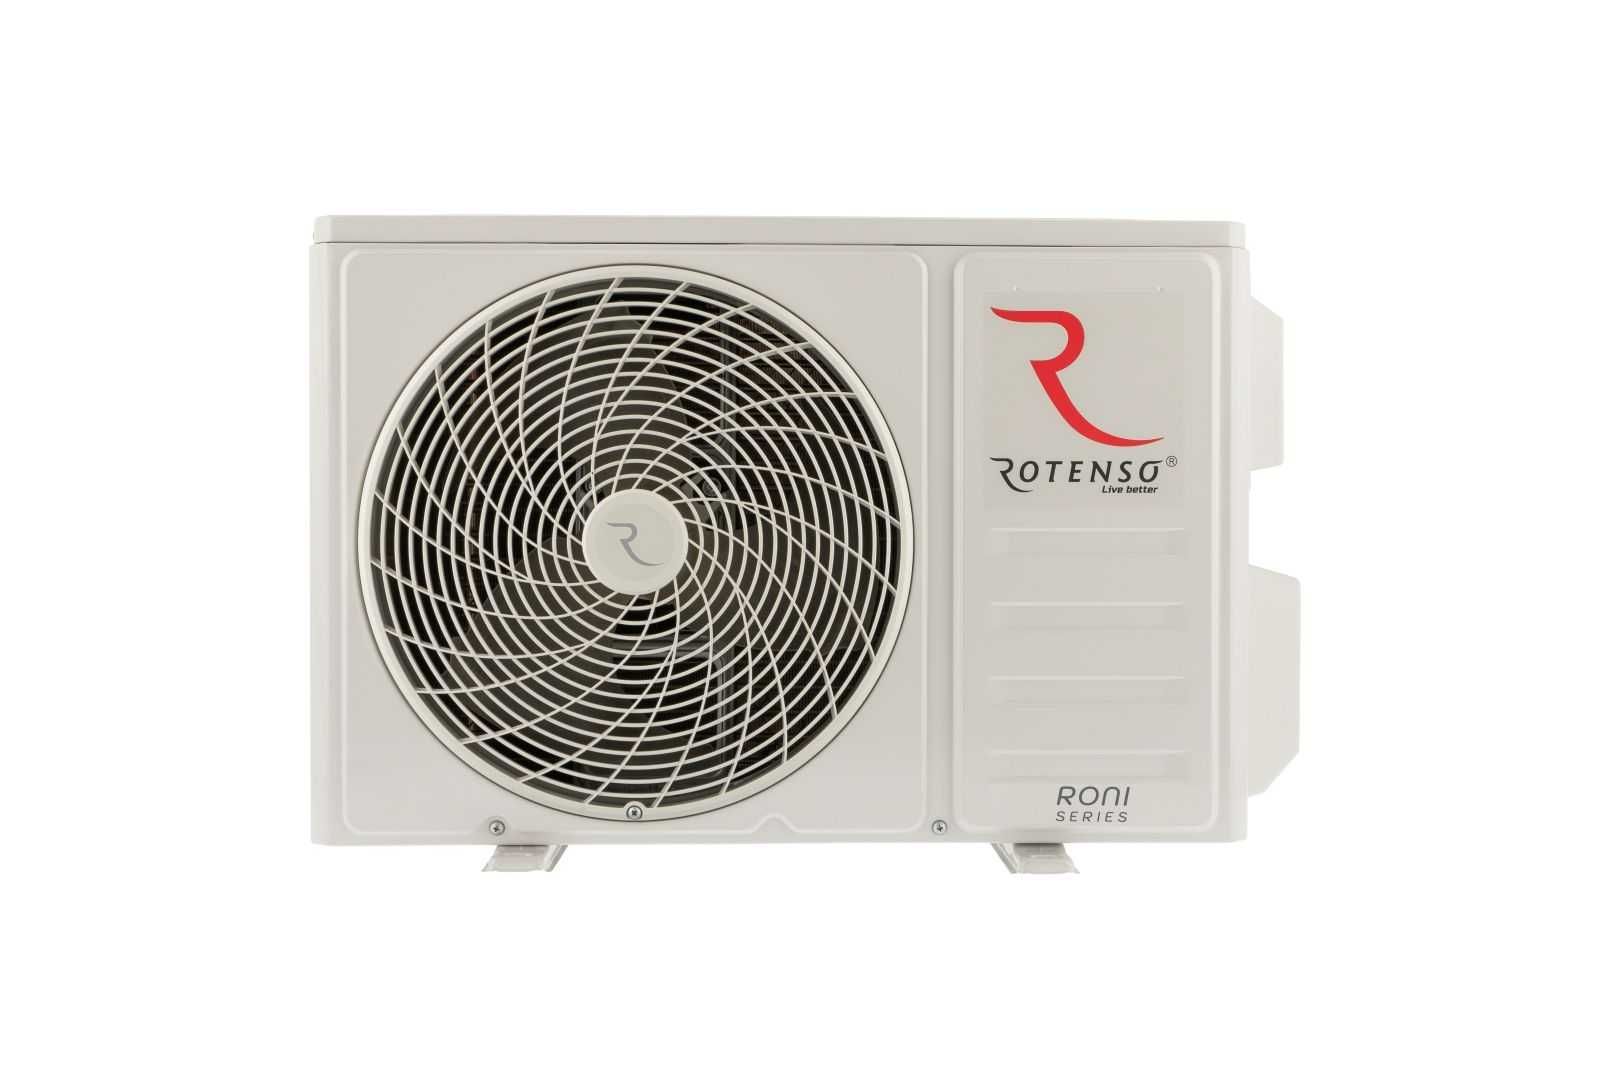 Klimatyzacja Rotenso Roni 3,4 kW wraz z montażem - 5 lat gwarancji